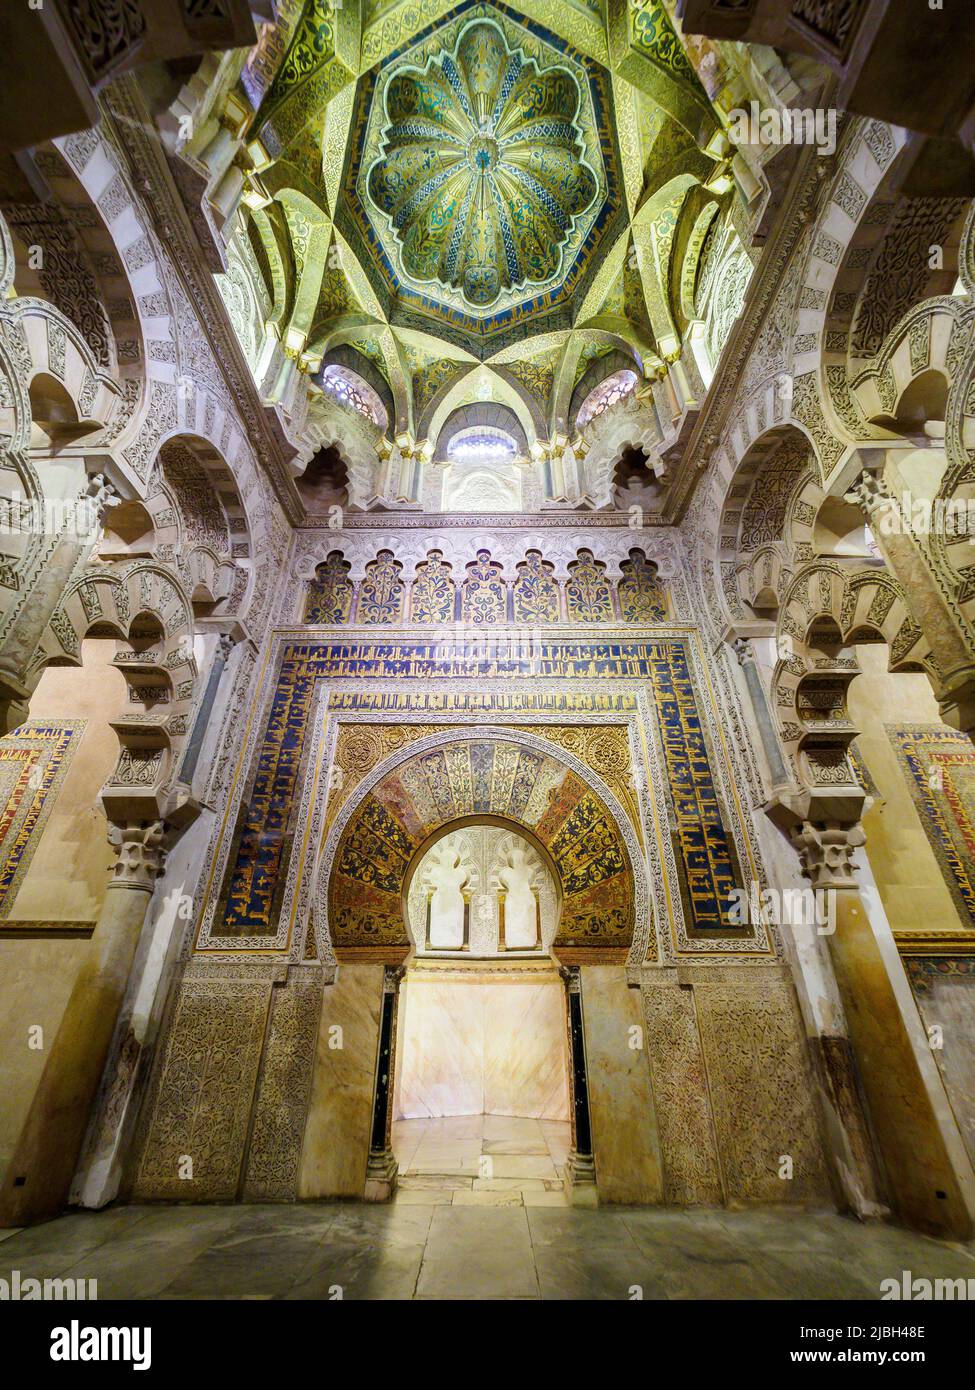 Das mosaikverzierte Mihrab (Mitte) und die verschränken Bögen der Maqsura (links und rechts) in der Erweiterung, die von al-Hakam II. Nach 961 - Mezq hinzugefügt wurde Stockfoto